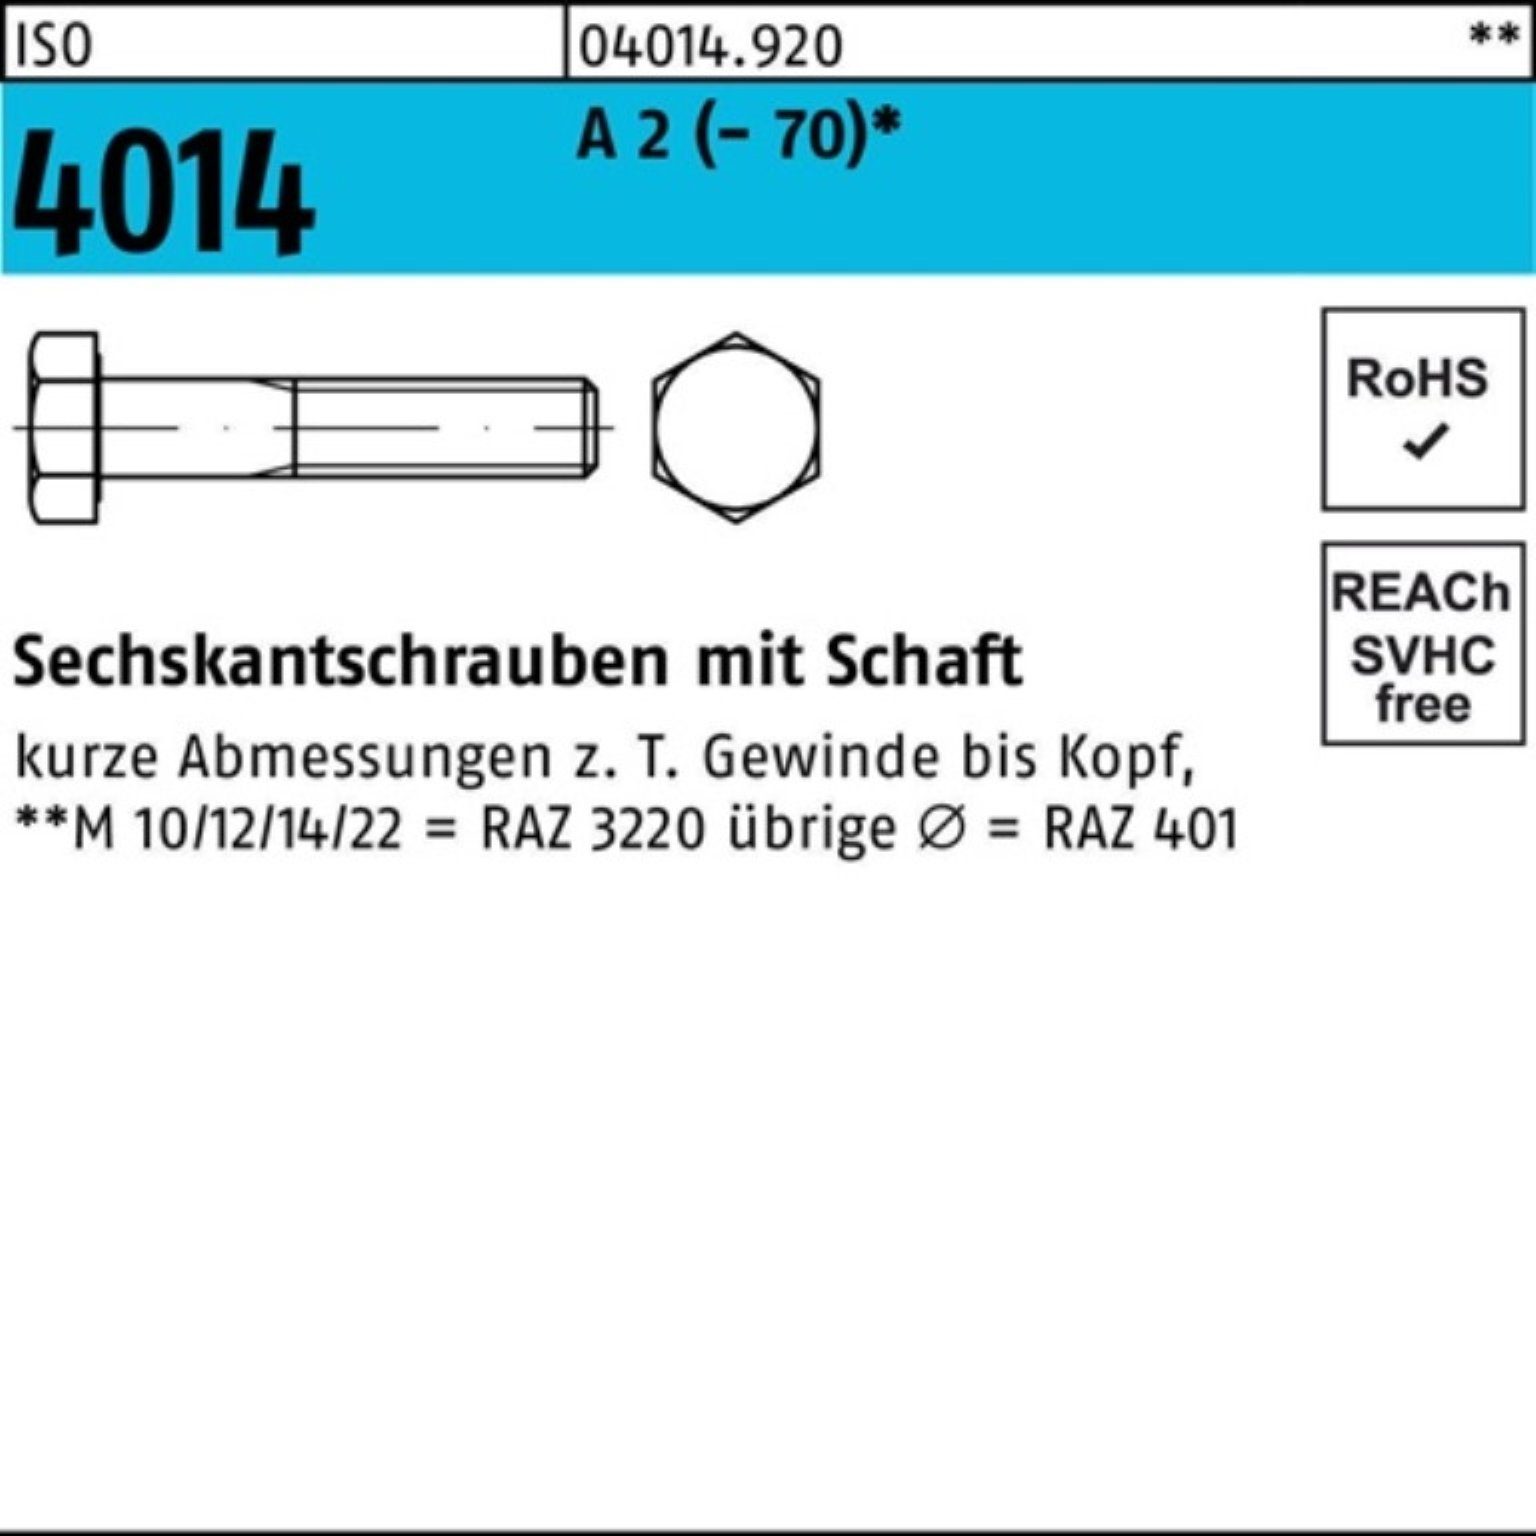 Bufab Sechskantschraube 100er Pack Sechskantschraube ISO 4014 Schaft M24x 85 A 2 (70) 1 Stü